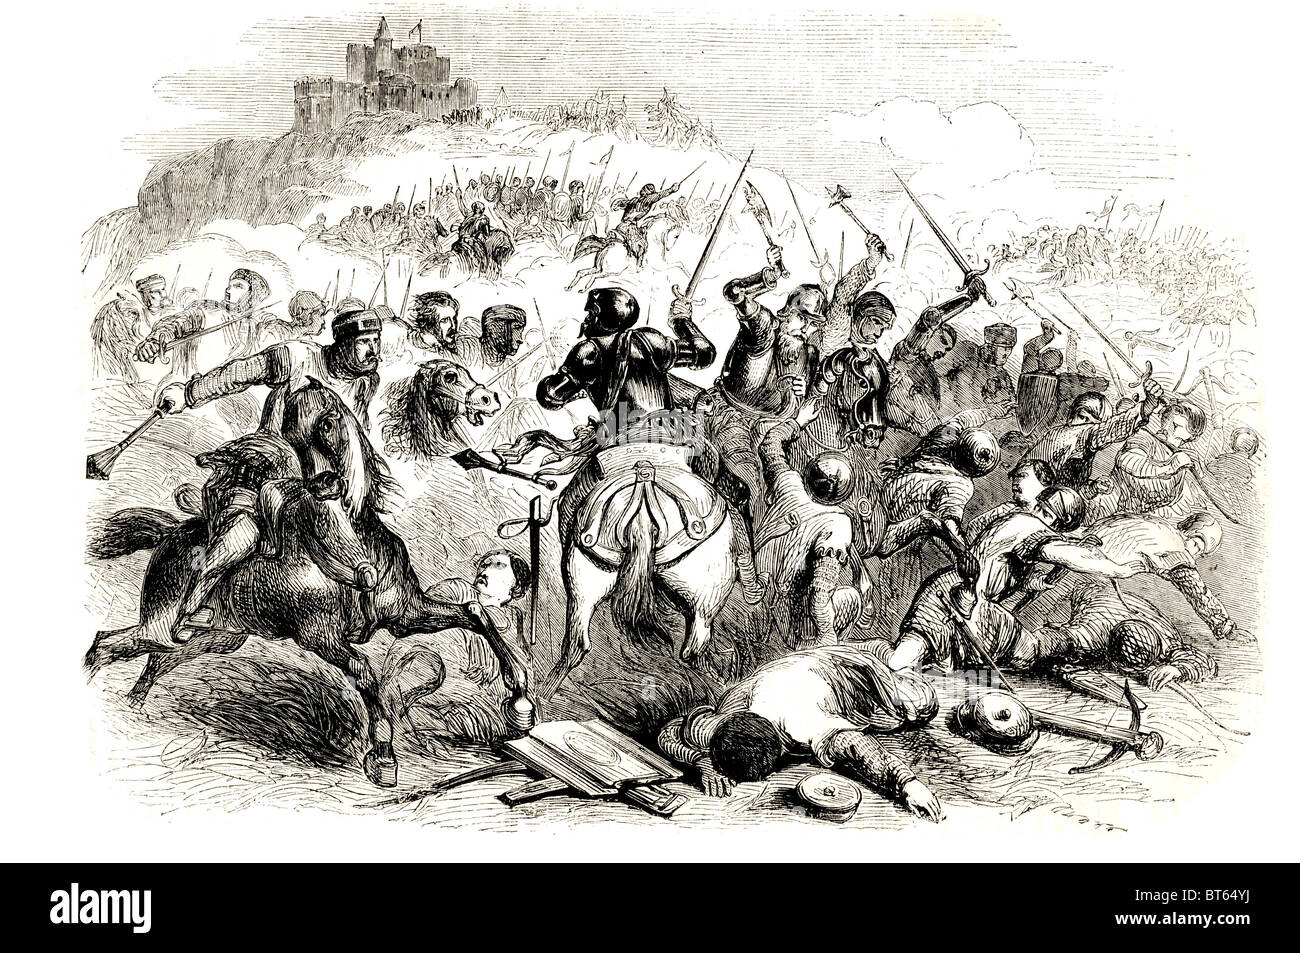 Schlacht von Bannockburn Blàr Allt ein "Bhonnaich-Schottisch-Gälisch 24 Juni 1314 Sieg Kriege der schottischen Unabhängigkeit. Erster Krieg des Sc Stockfoto